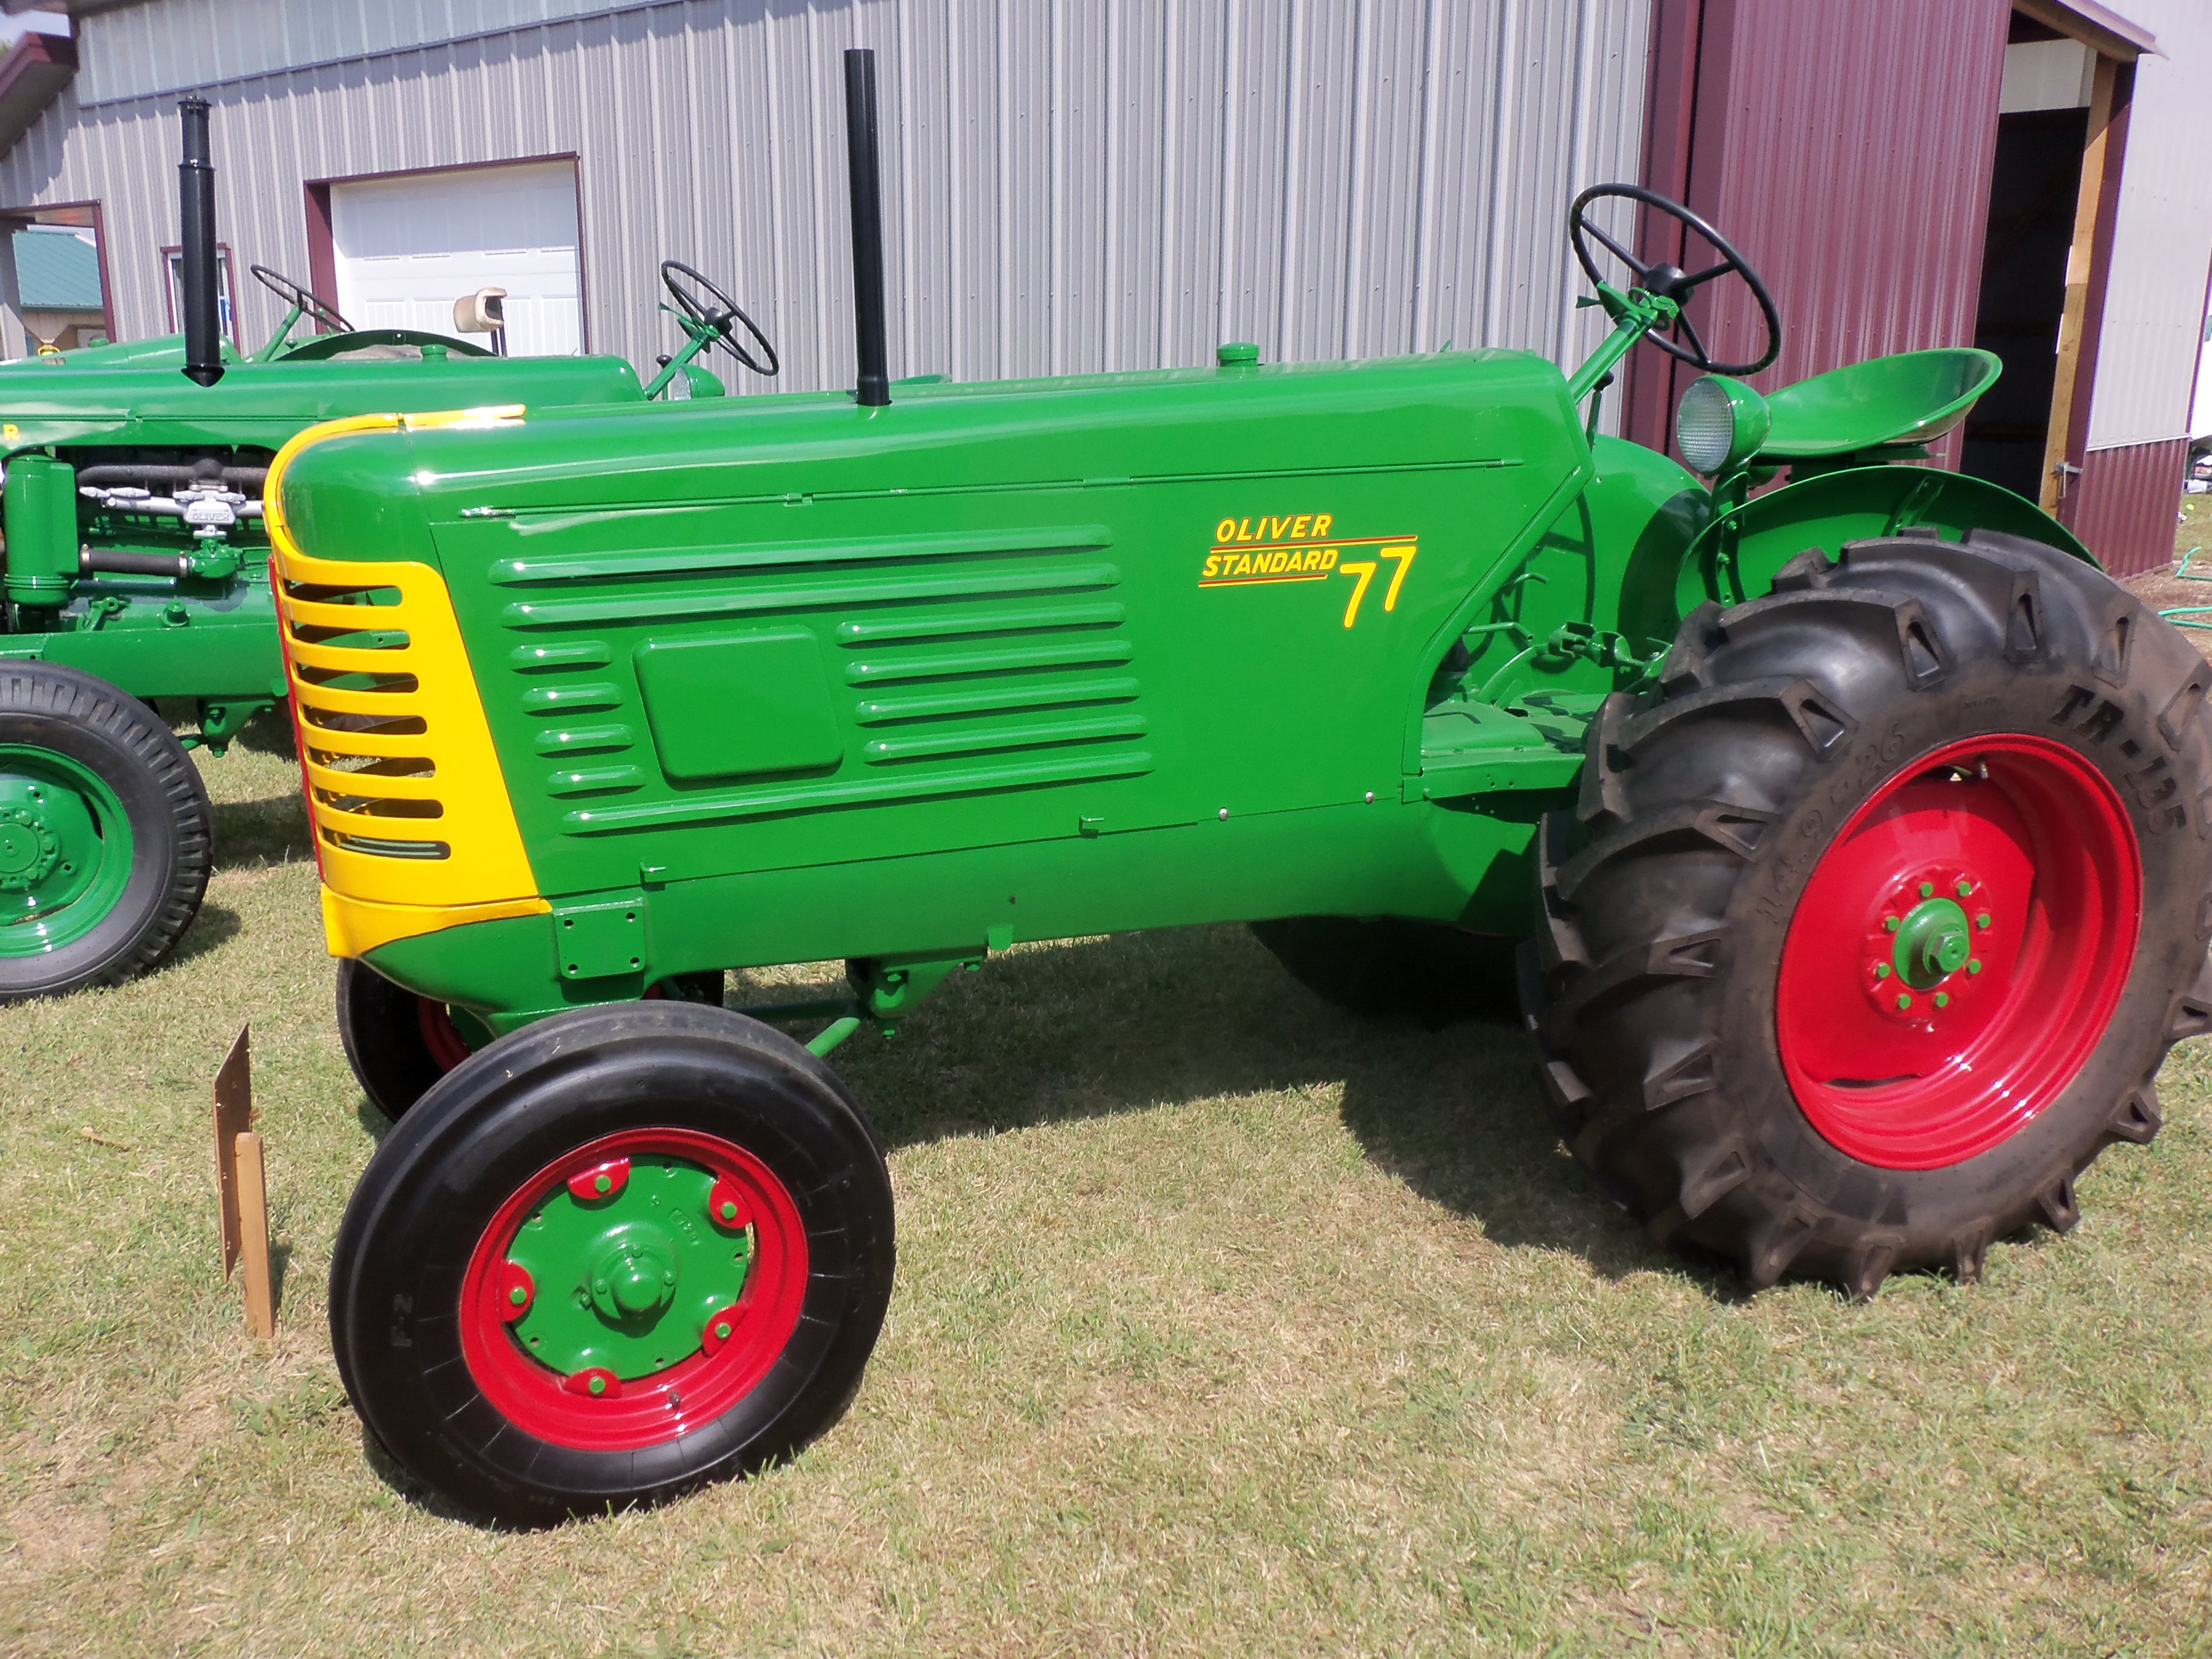 Oliver 77 Standard | Oliver Tractors & Equipment | Pinterest